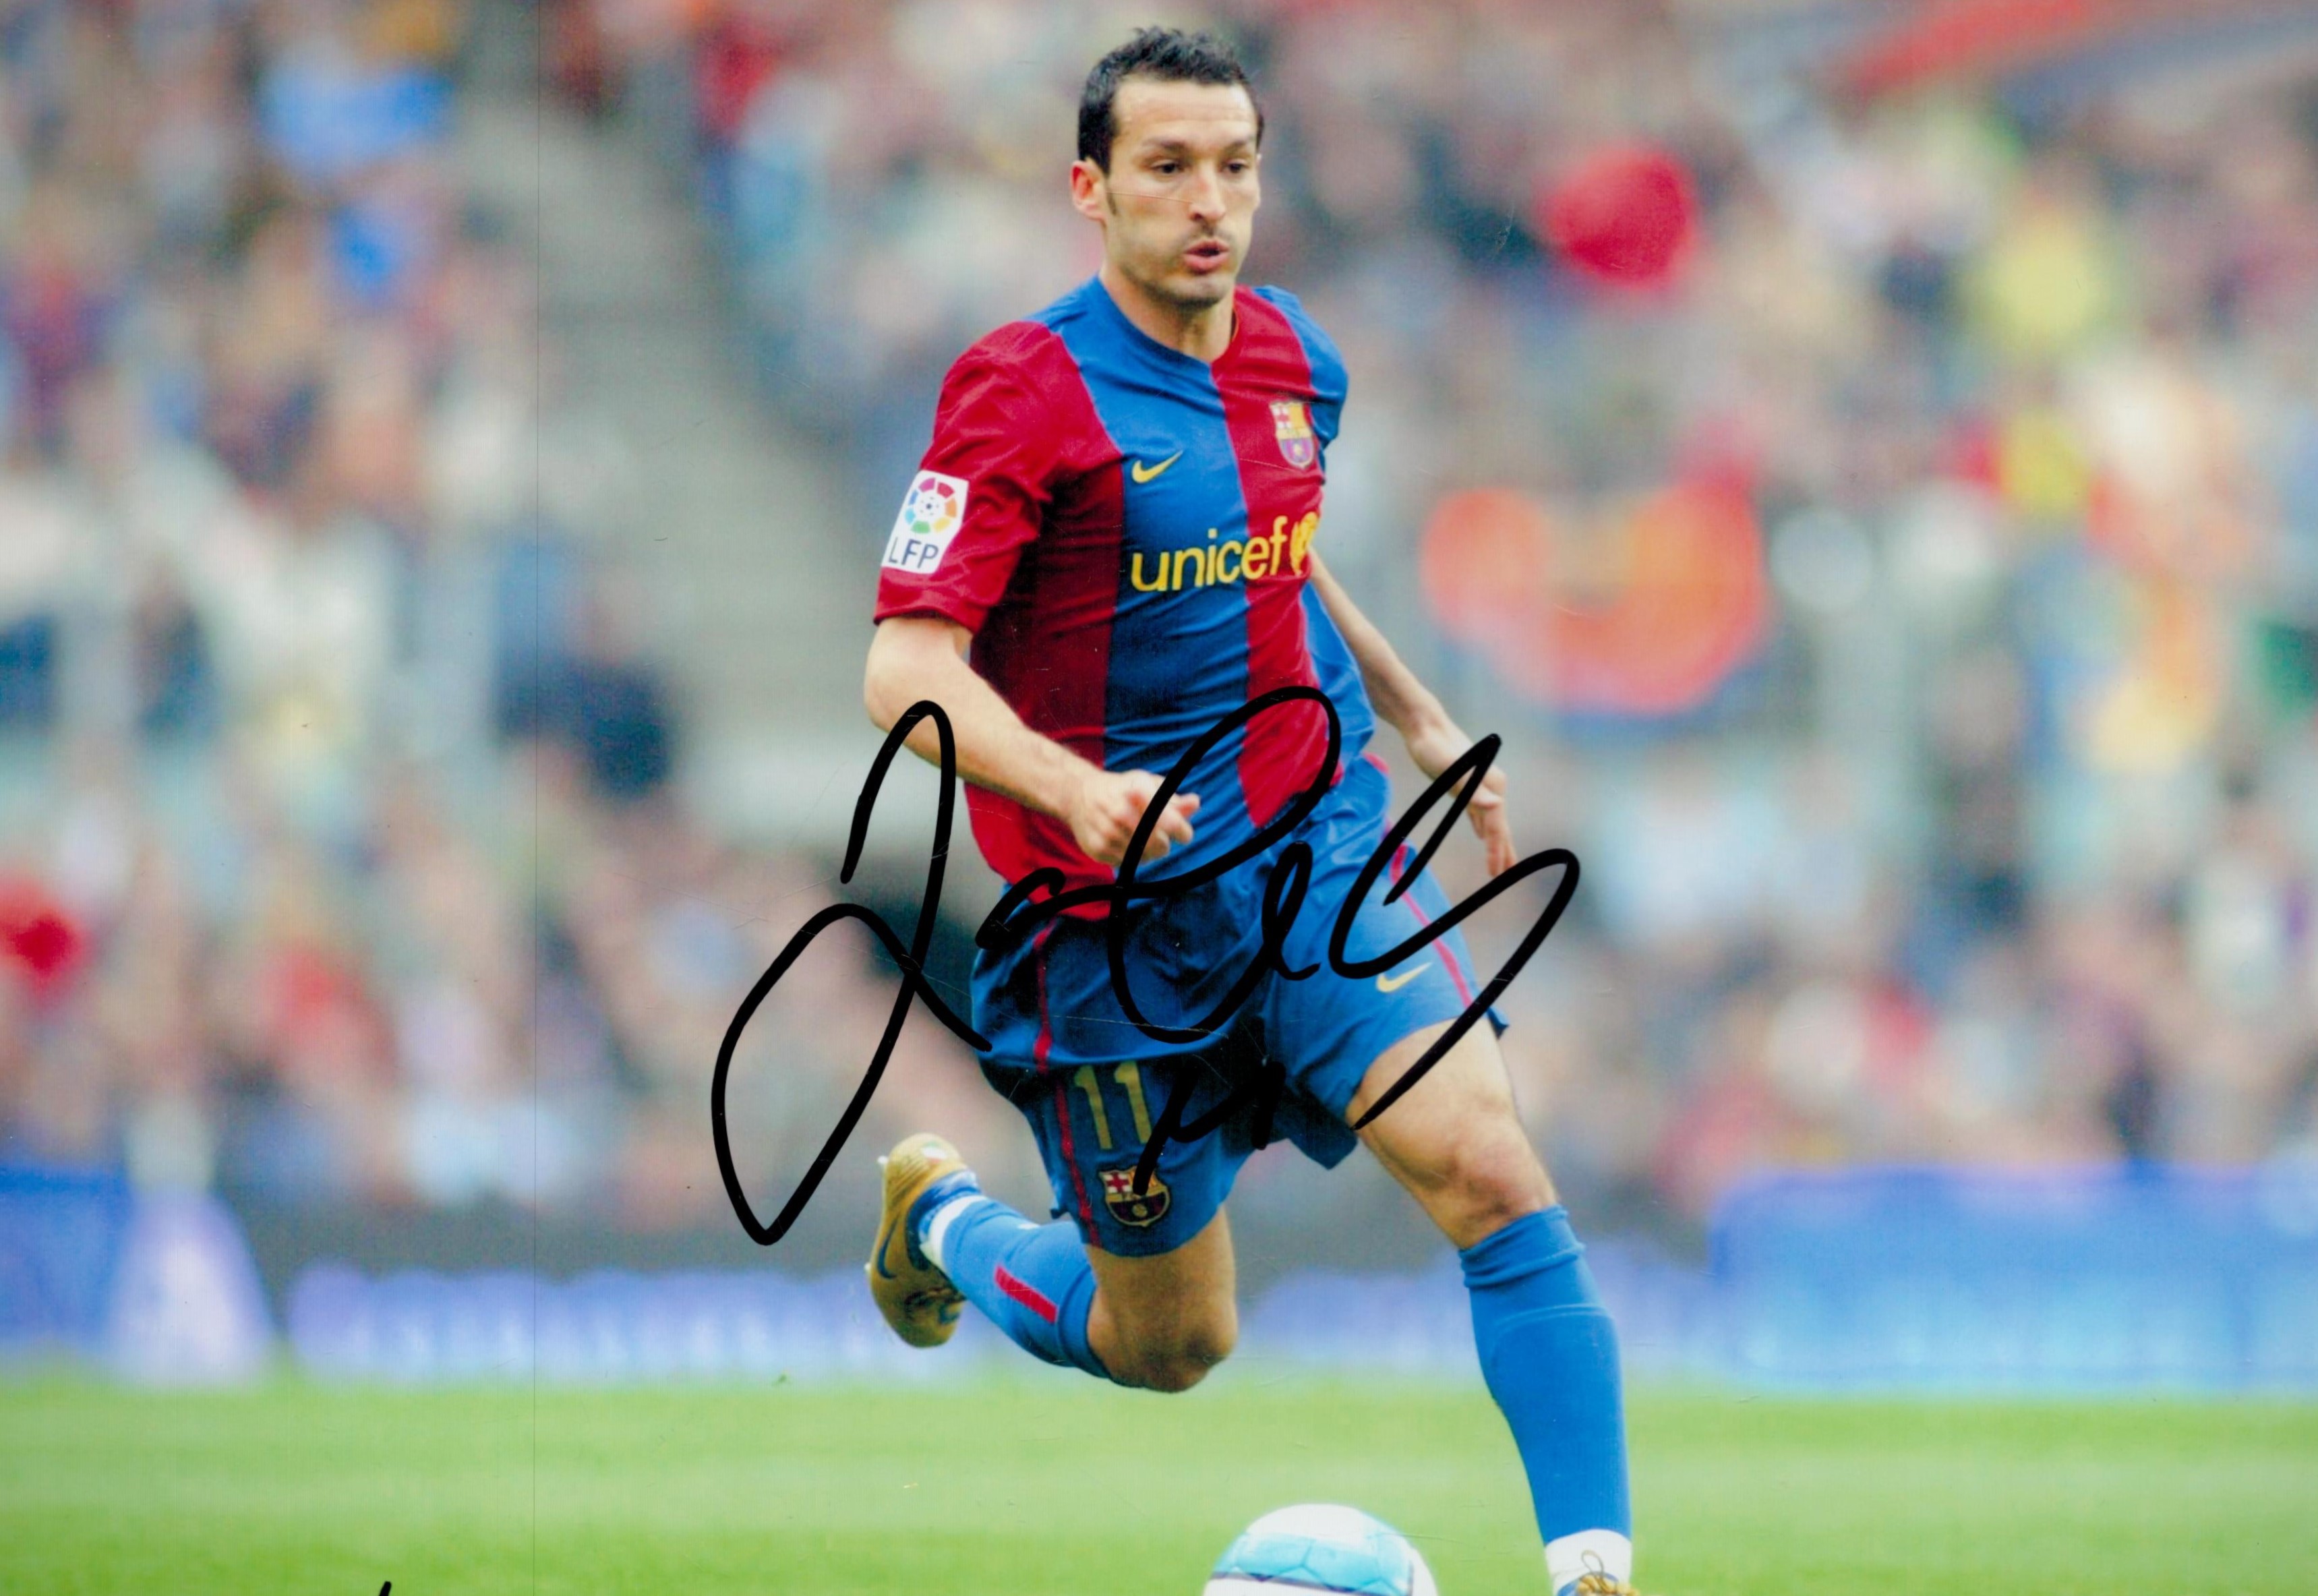 Juliano Belletti Signed 12x8 inch Colour Barcelona FC Photo. Good condition. All autographs come